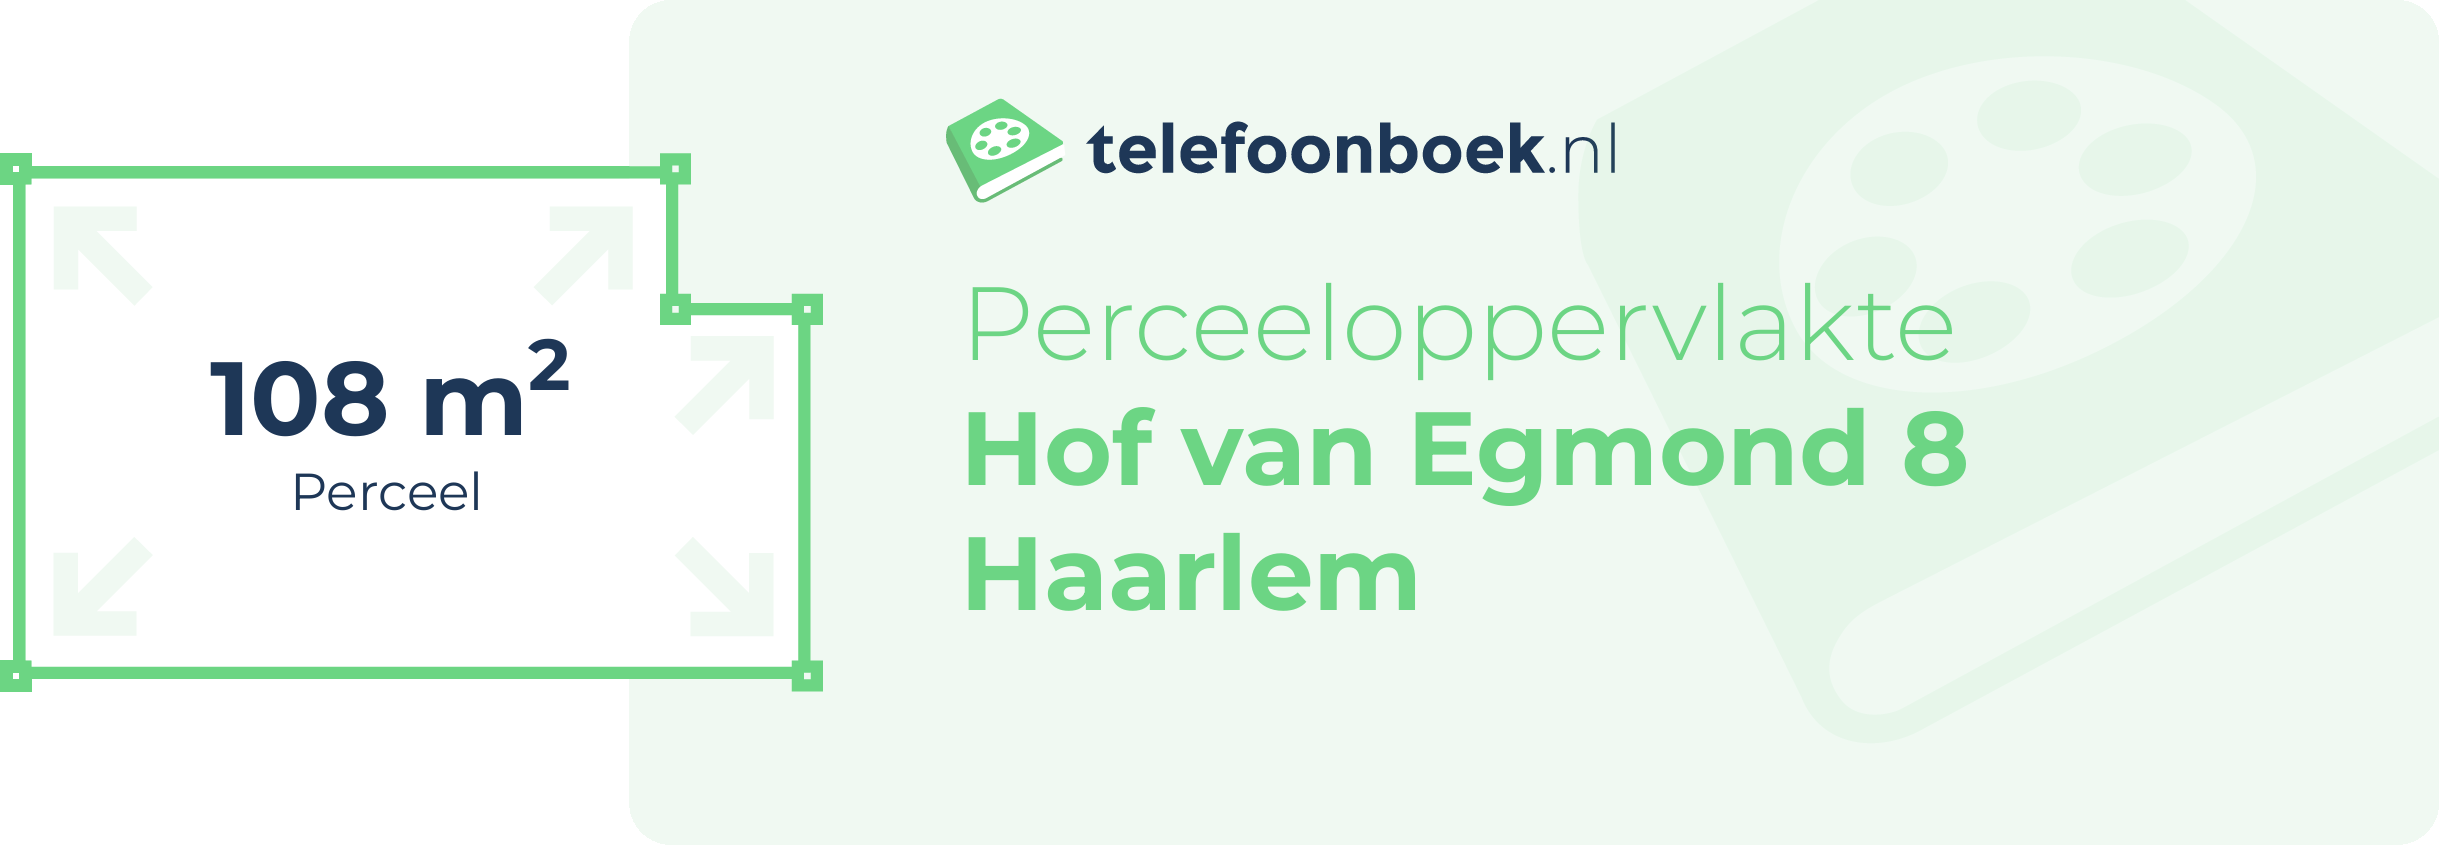 Perceeloppervlakte Hof Van Egmond 8 Haarlem